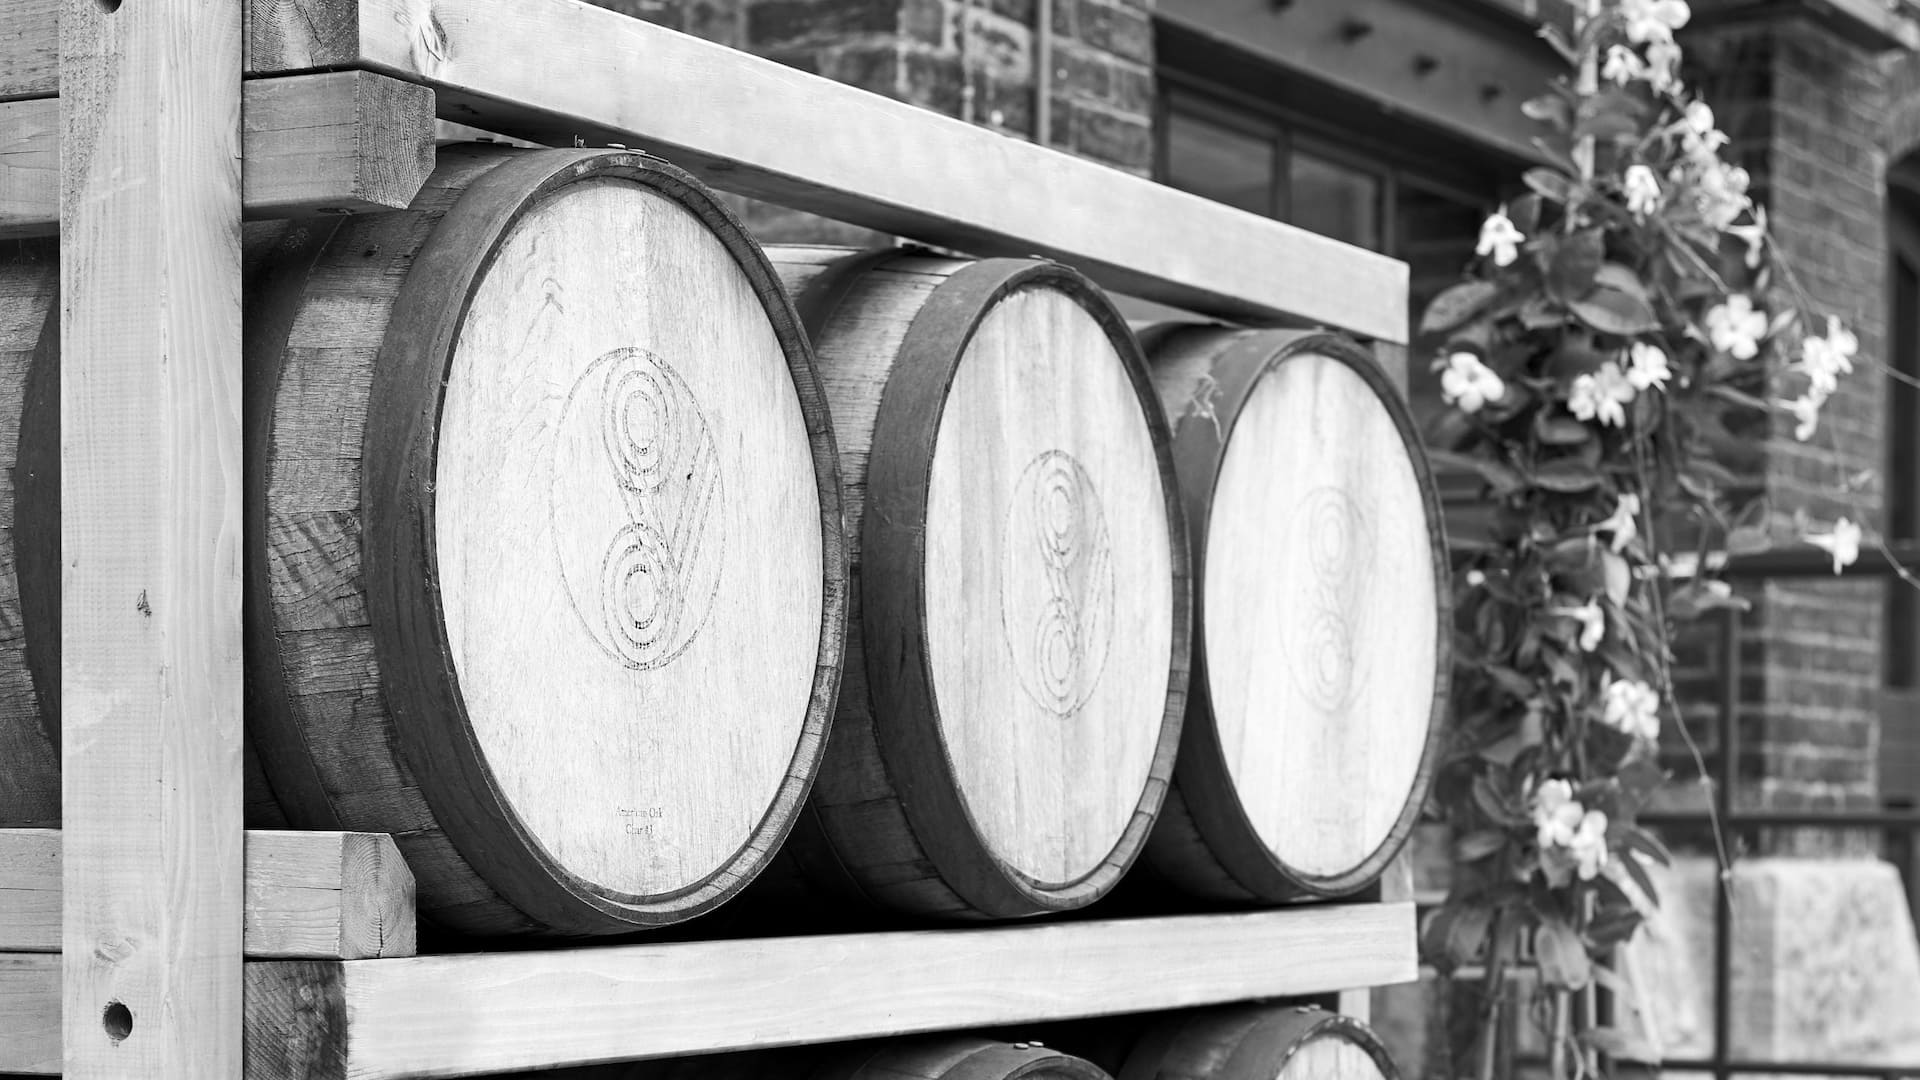 A closeup view of 3 wooden distillery barrels